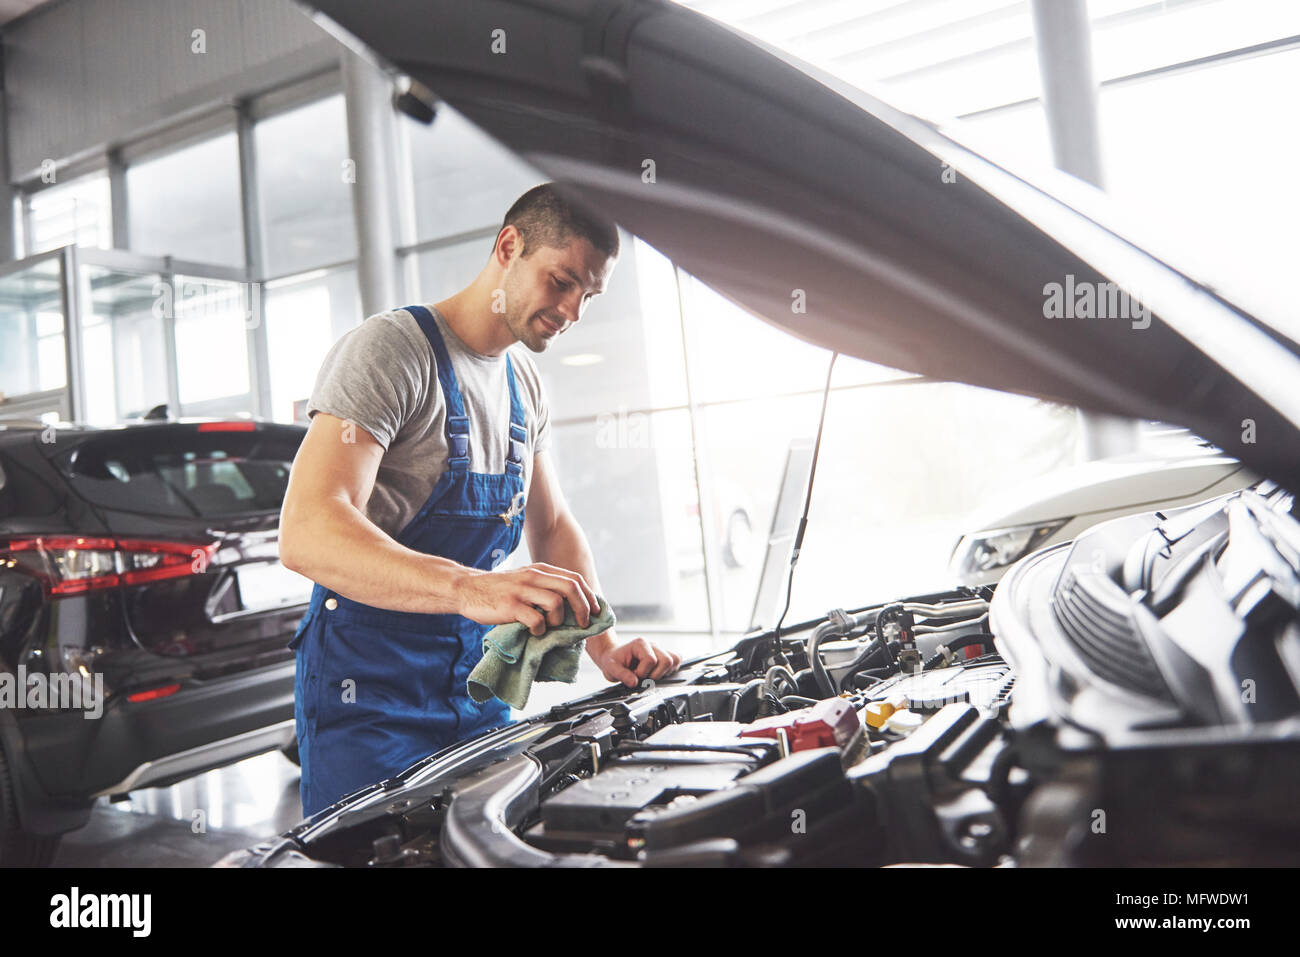 Auto mechanic working in garage. Repair service Stock Photo